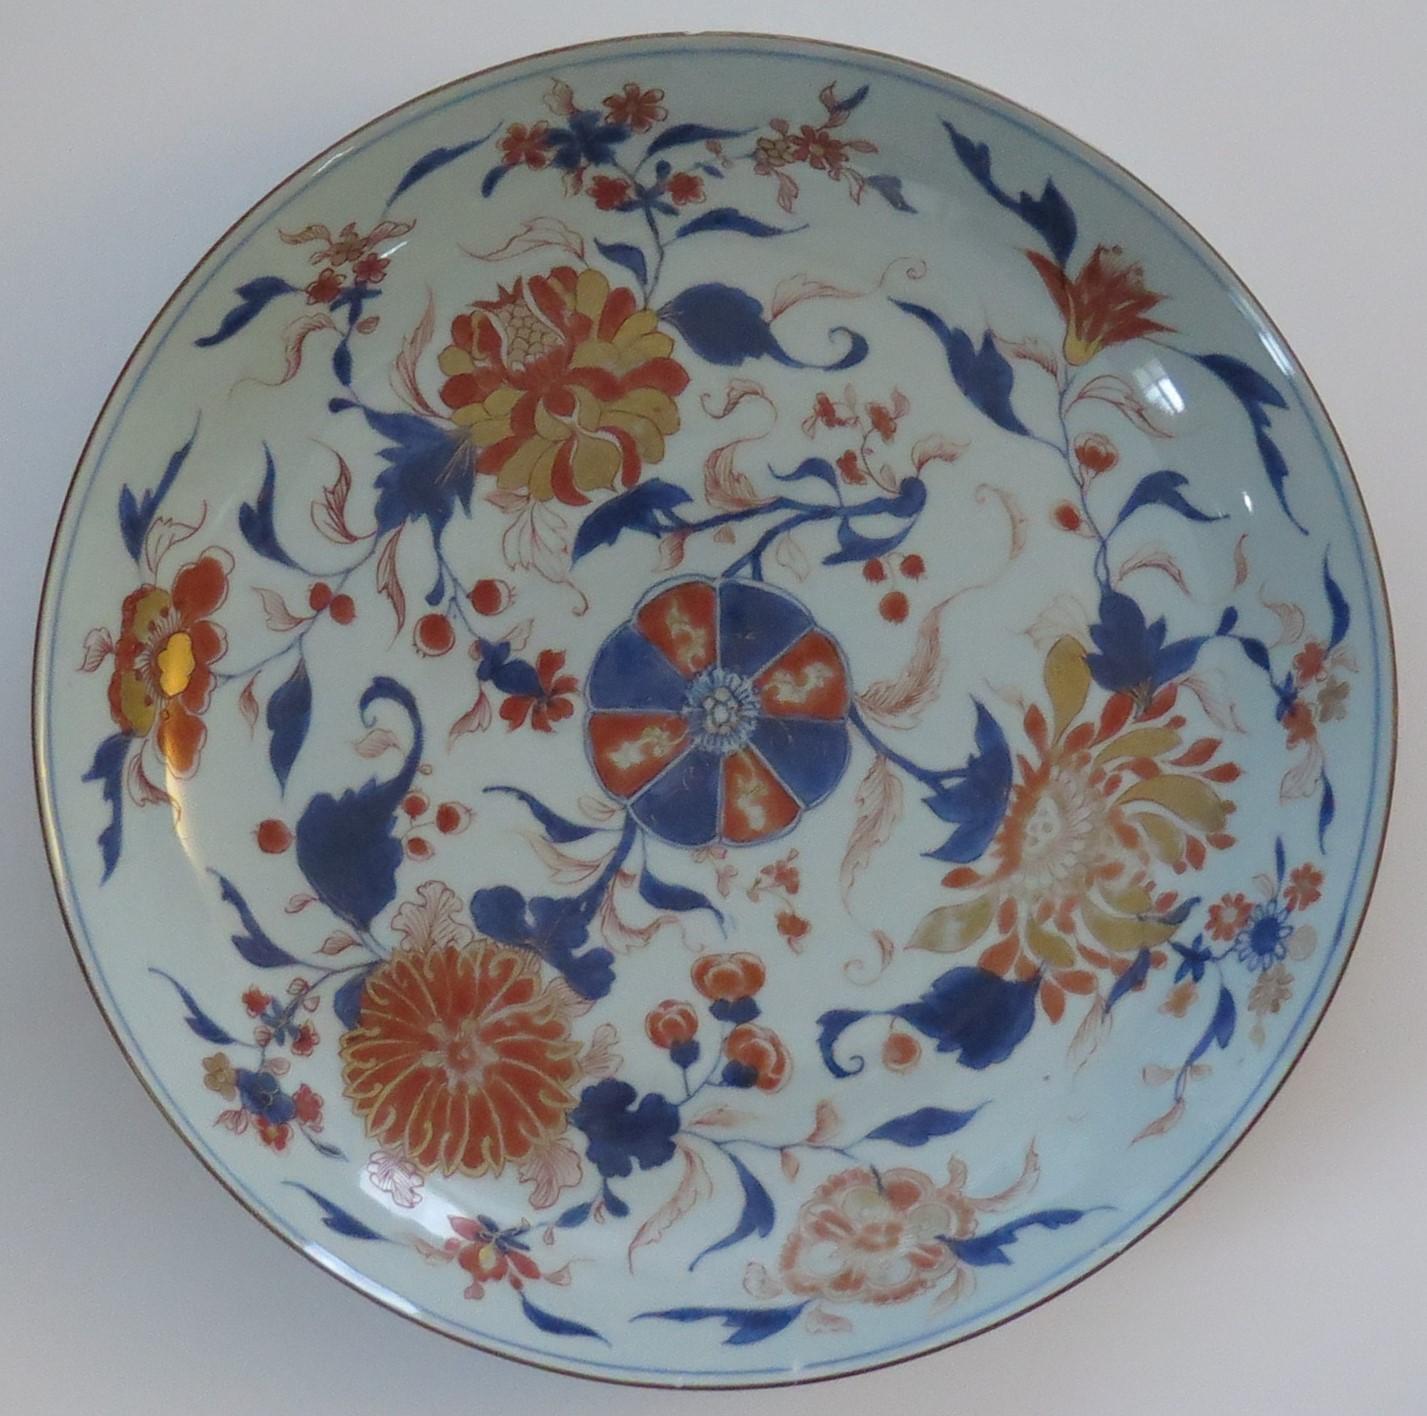 Plato o fuente muy grande de porcelana china Imari pintado a mano, del periodo Qing, Kangxi, 1662-1722, que data de hacia 1710.

Los platos o cargadores de la época Kangxi de gran diámetro (37,3 cm o 14,7 pulgadas) son difíciles de encontrar.  

El